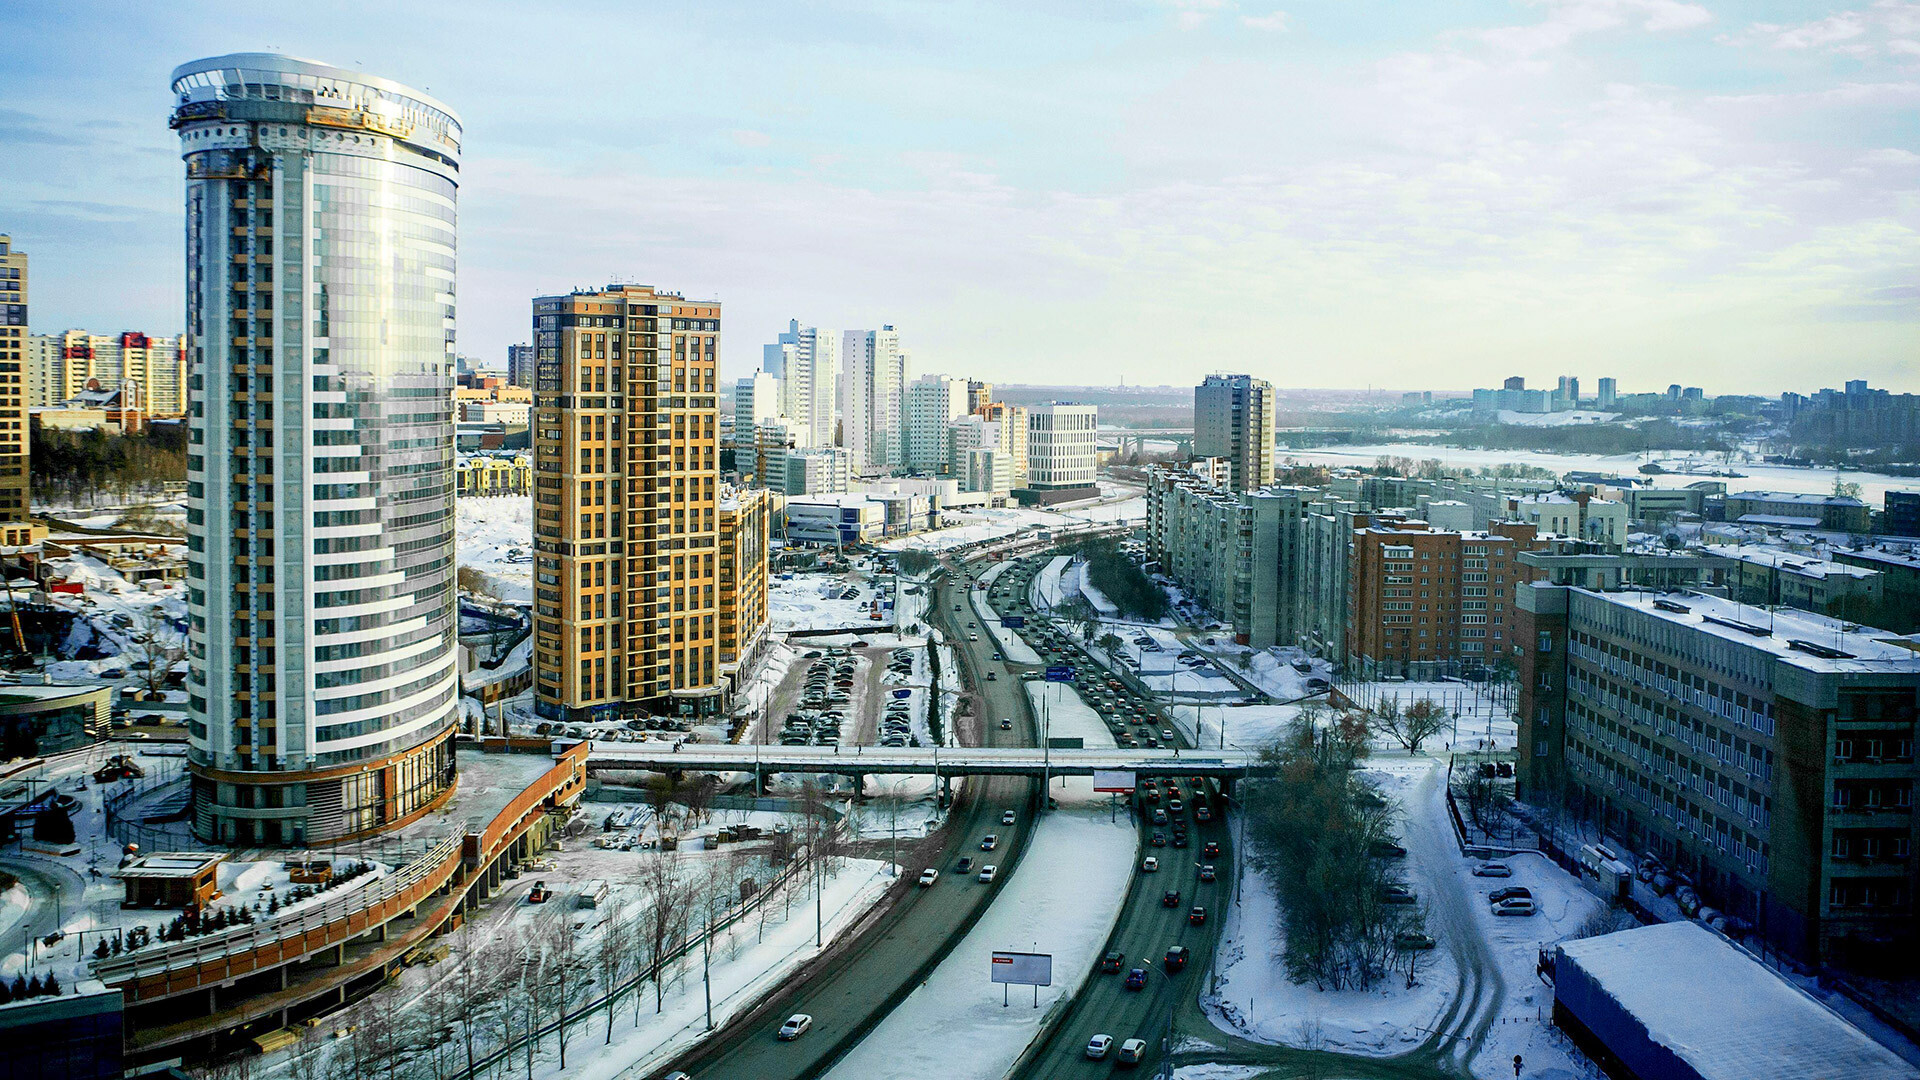 Novosibirsk Stadtlandschaften, Hochhaus Büro-und Wohngebäude und Wolkenkratzer in der Stadt, Straße für Autos und Fußgängerbrücke, Blick von oben im Winter.